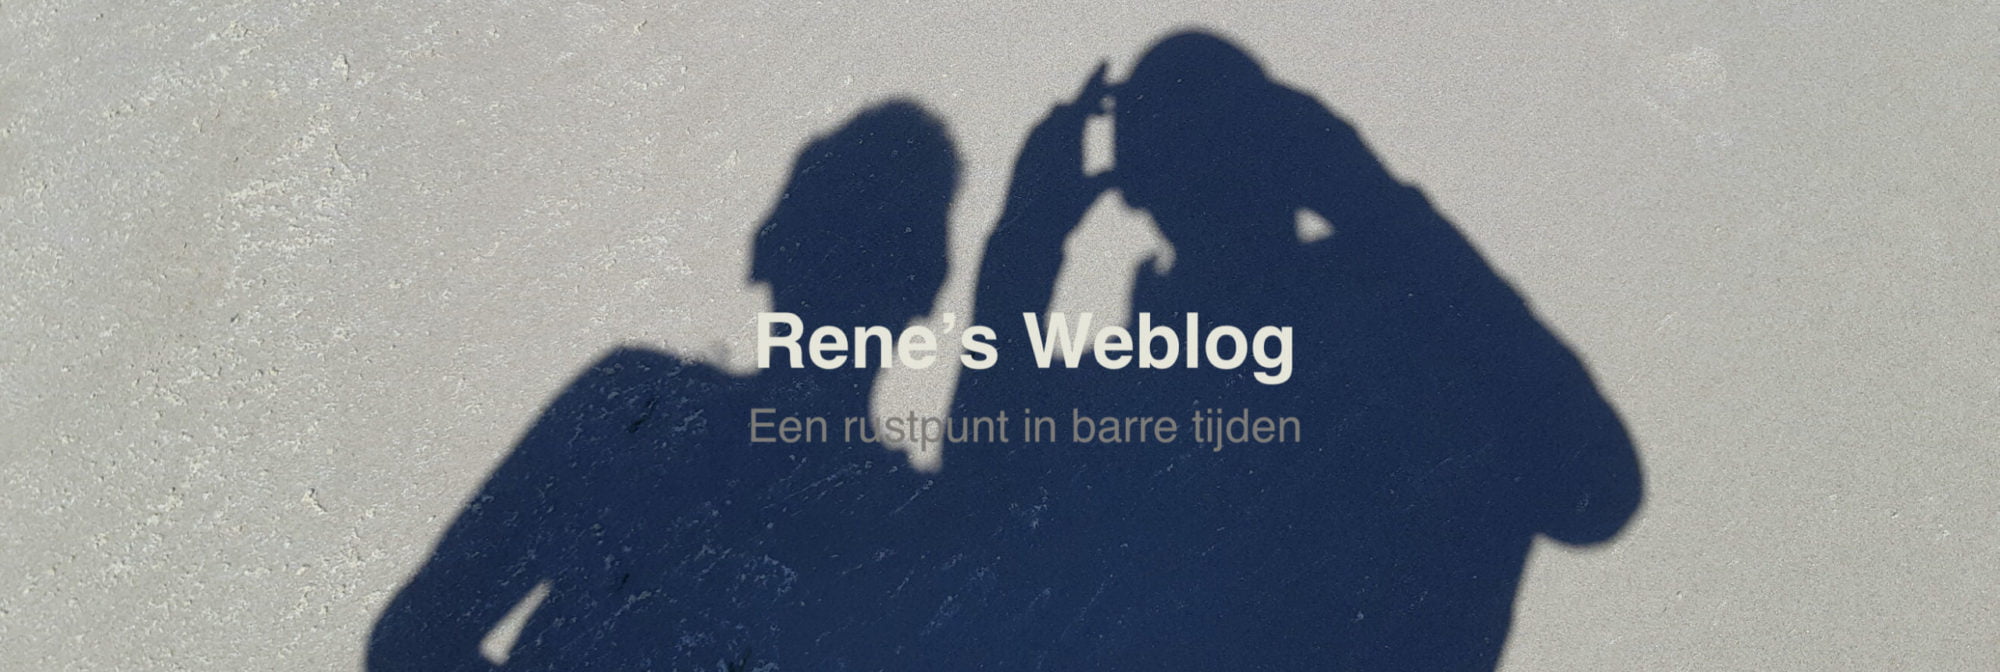 mattizz.nl – Rene's Weblog – Een rustpunt in barre tijden